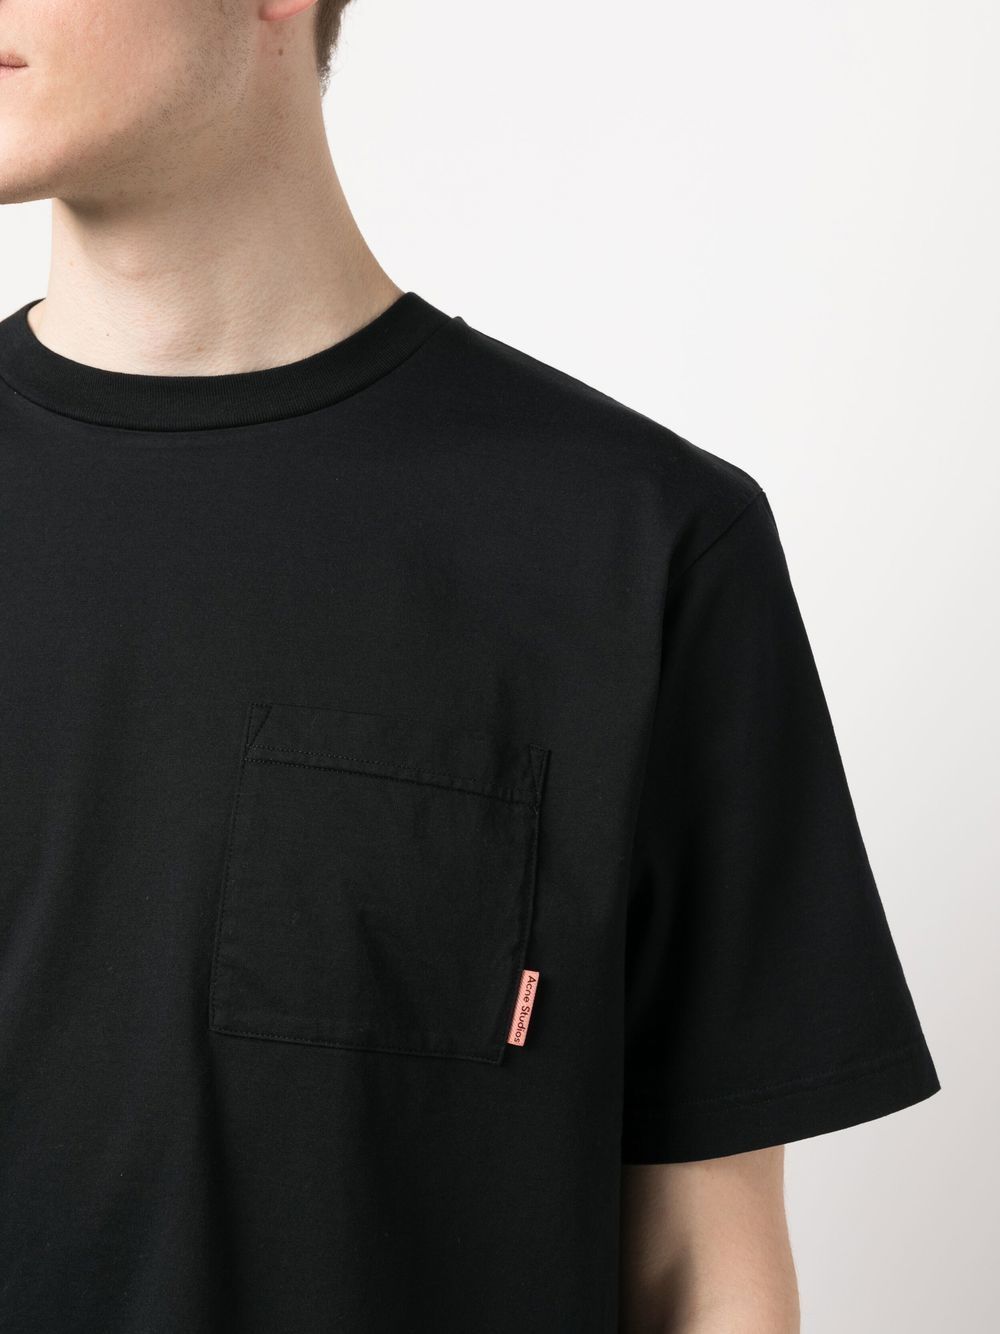 Acne Studios T-Shirt Black - Lothaire